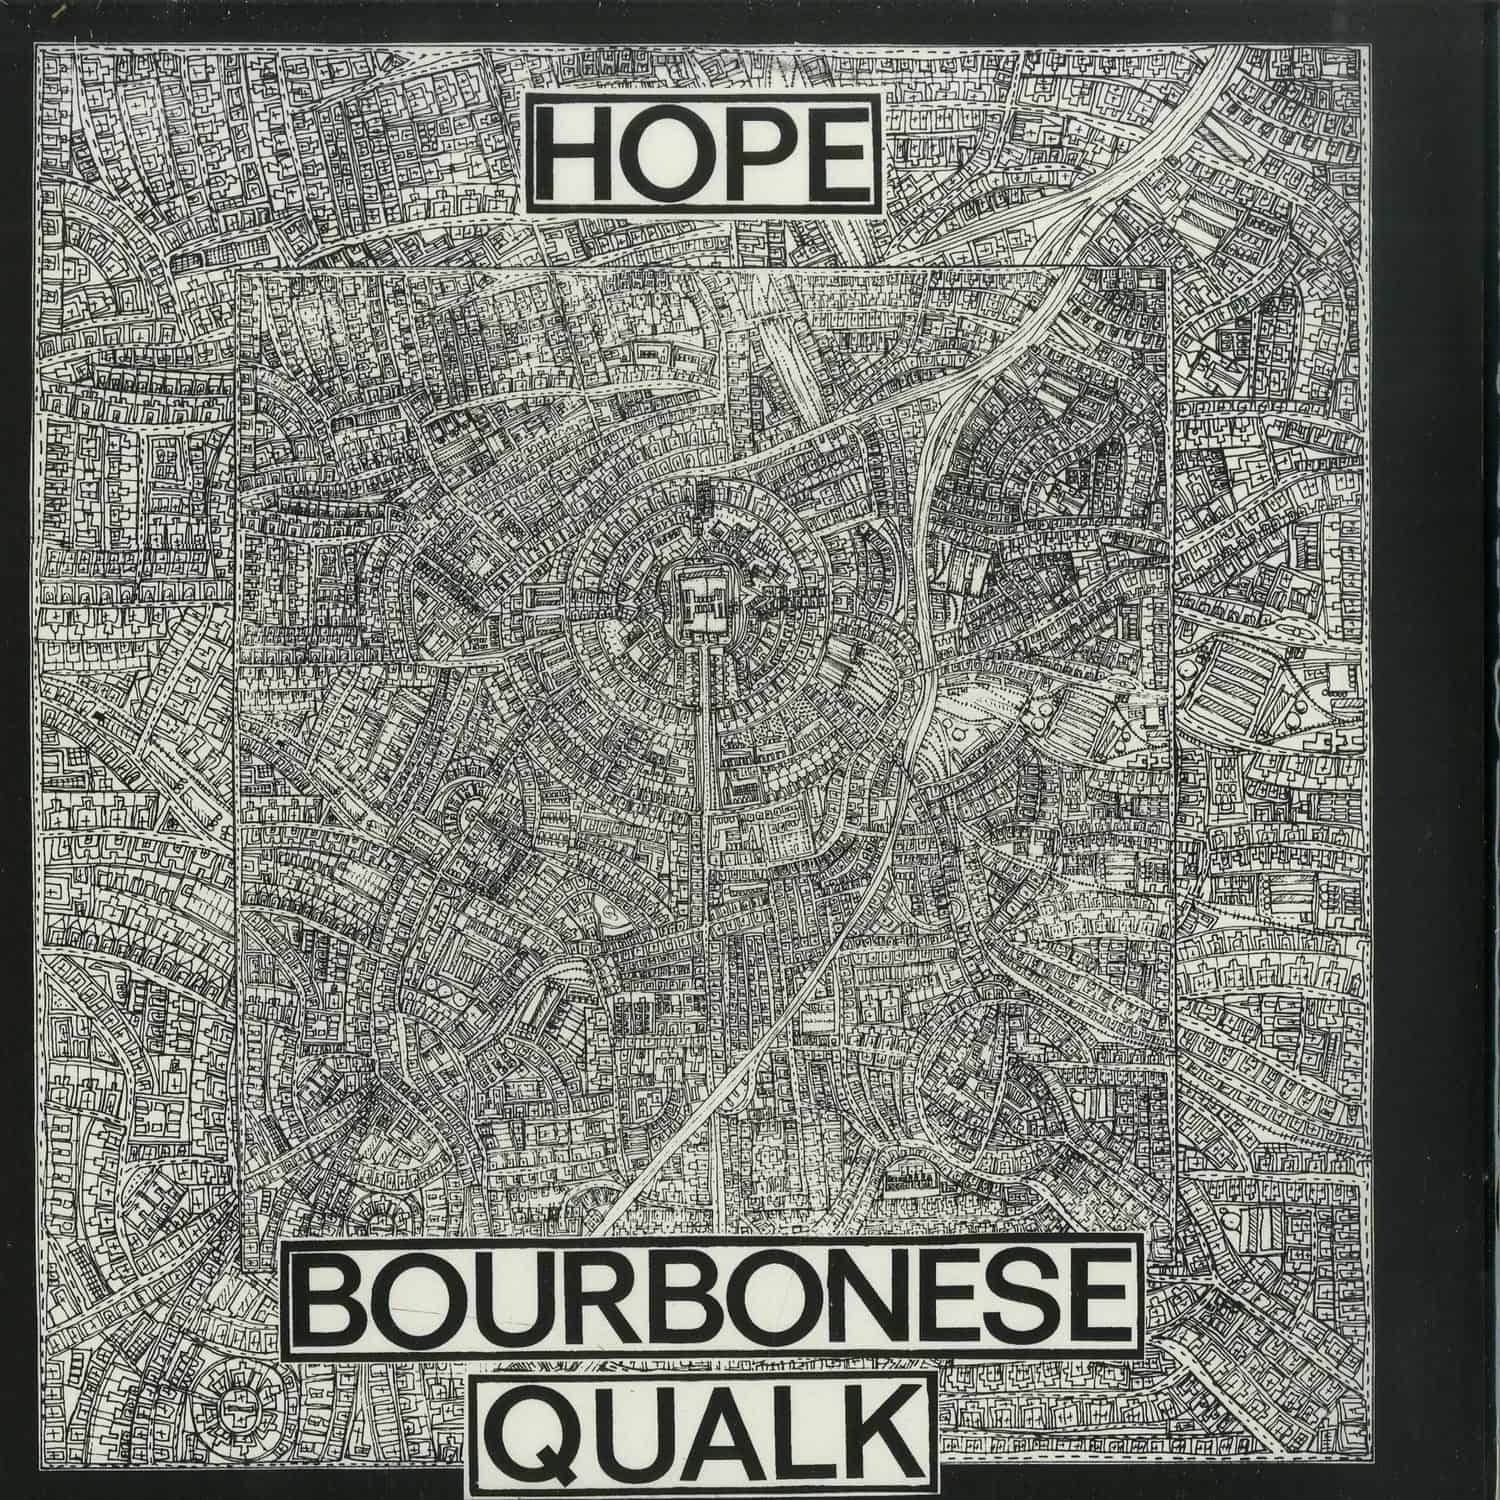 Bourbonese Qualk - HOPE 